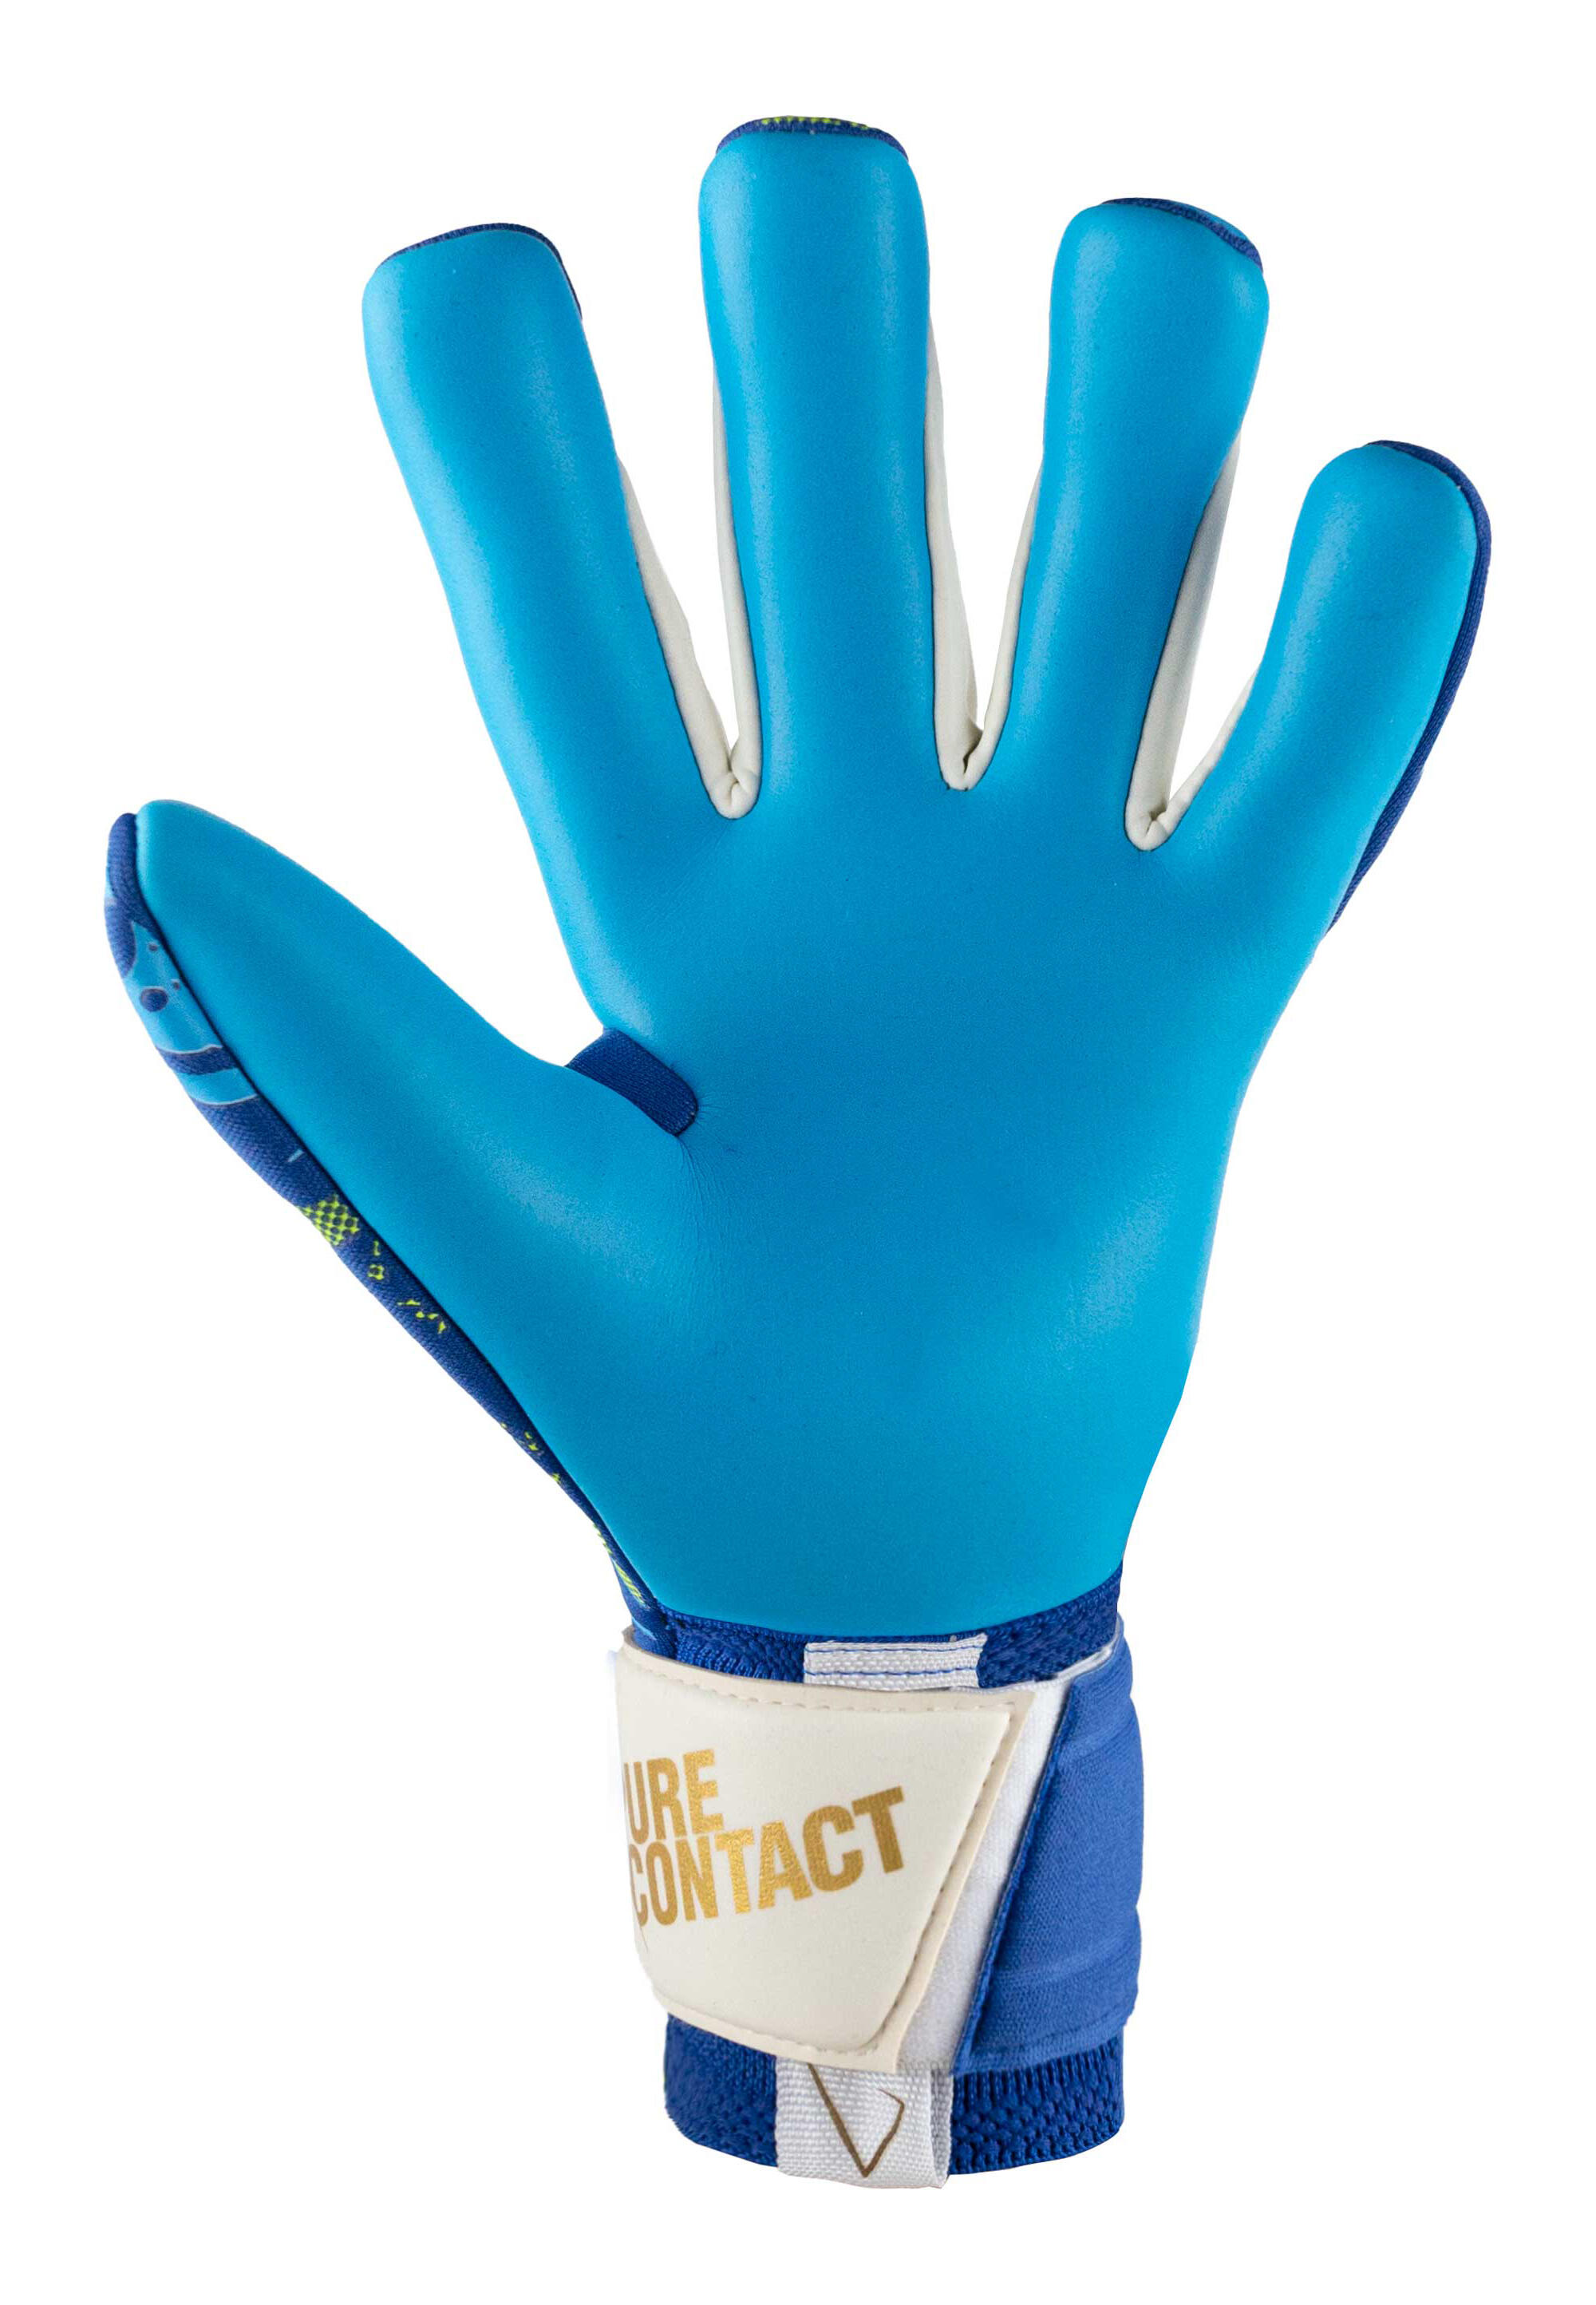 Reusch Pure Contact Aqua Goalkeeper Gloves 5/5